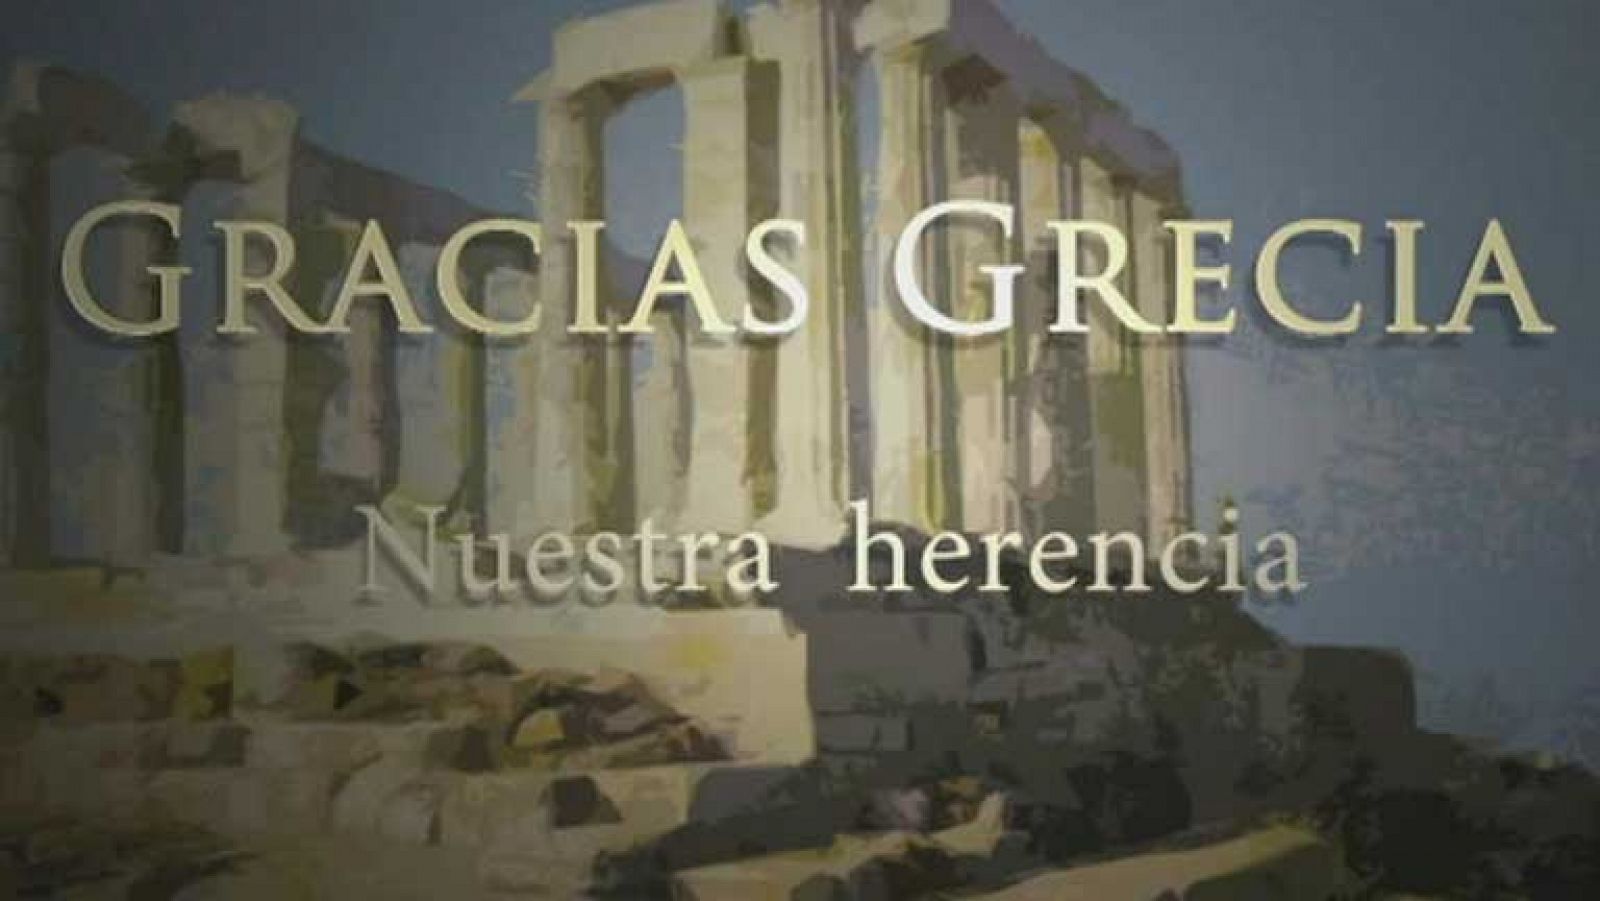 Telediario 1: El vídeo "Gracias, Grecia" causa sensación en el país heleno | RTVE Play